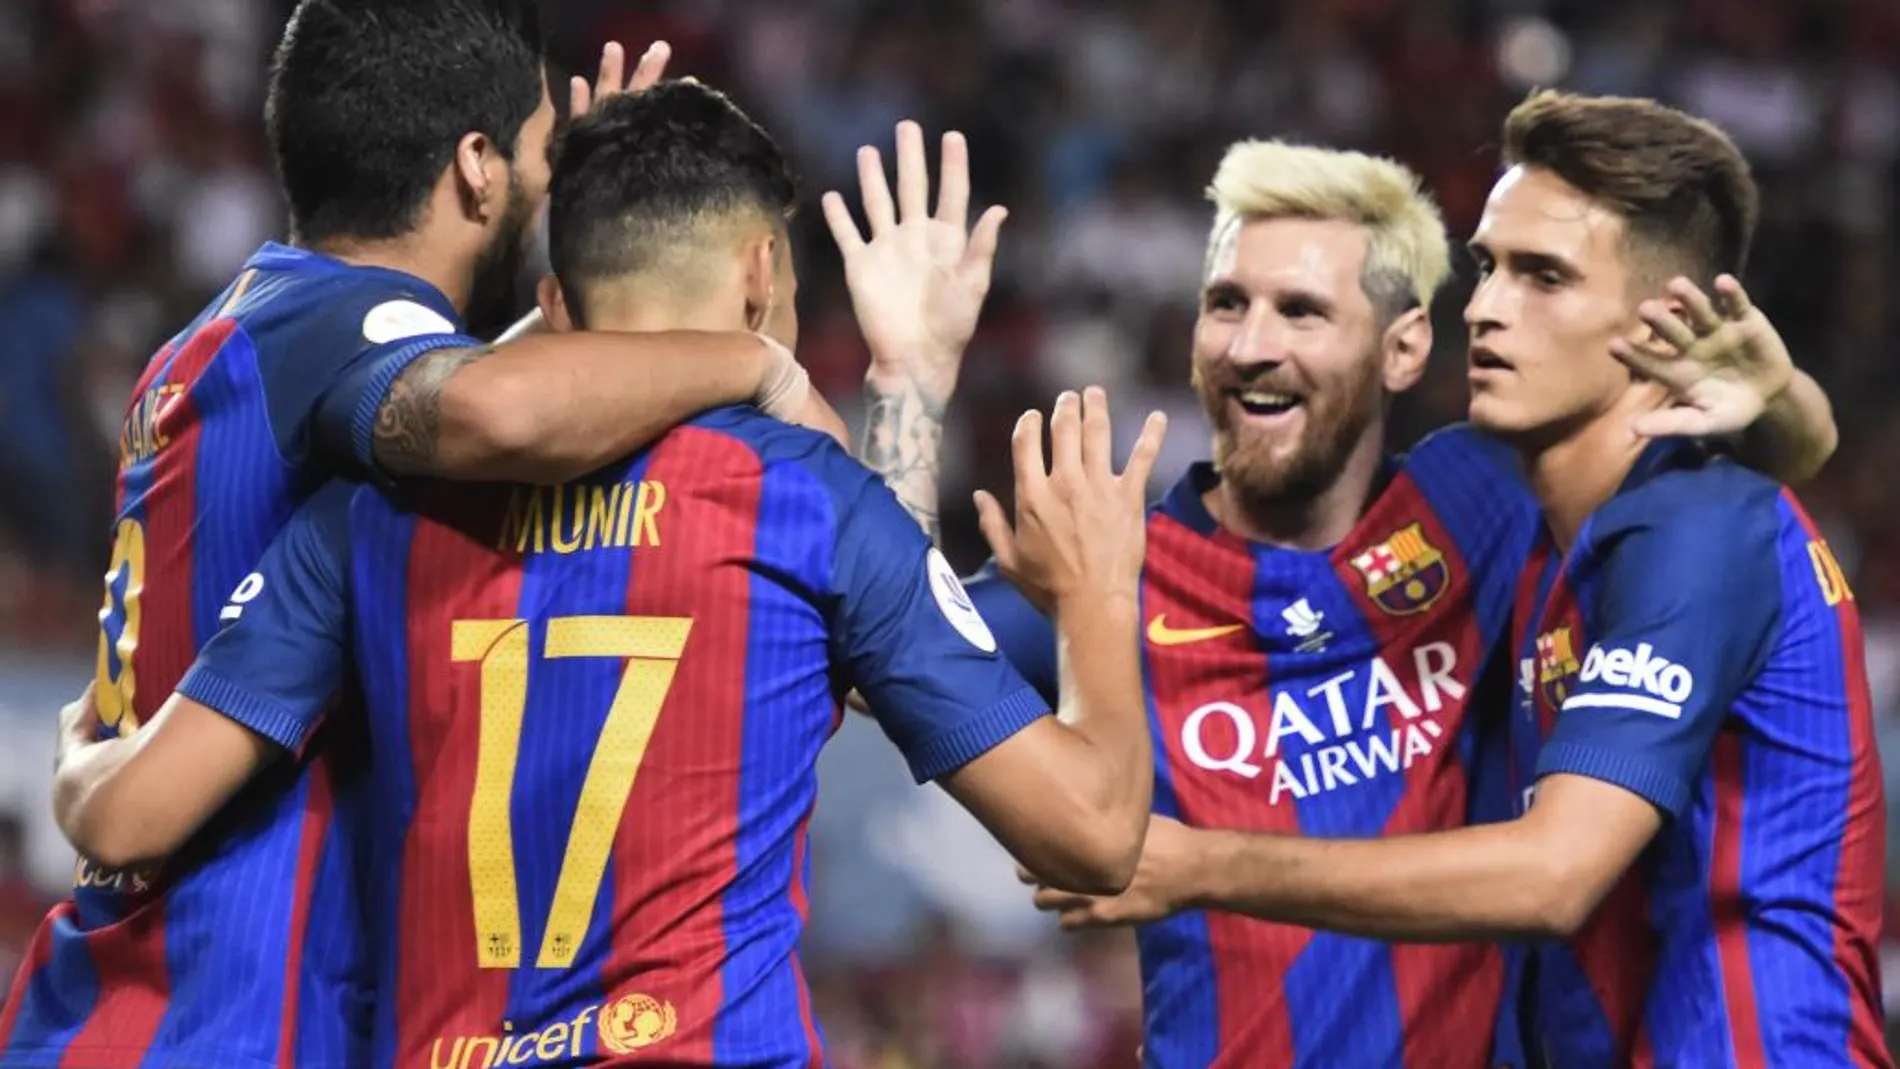 El delantero del FC Barcelona Munir El Haddadi (2i) celebra su gol, segundo del equipo frente al Sevilla FC, con sus compañeros